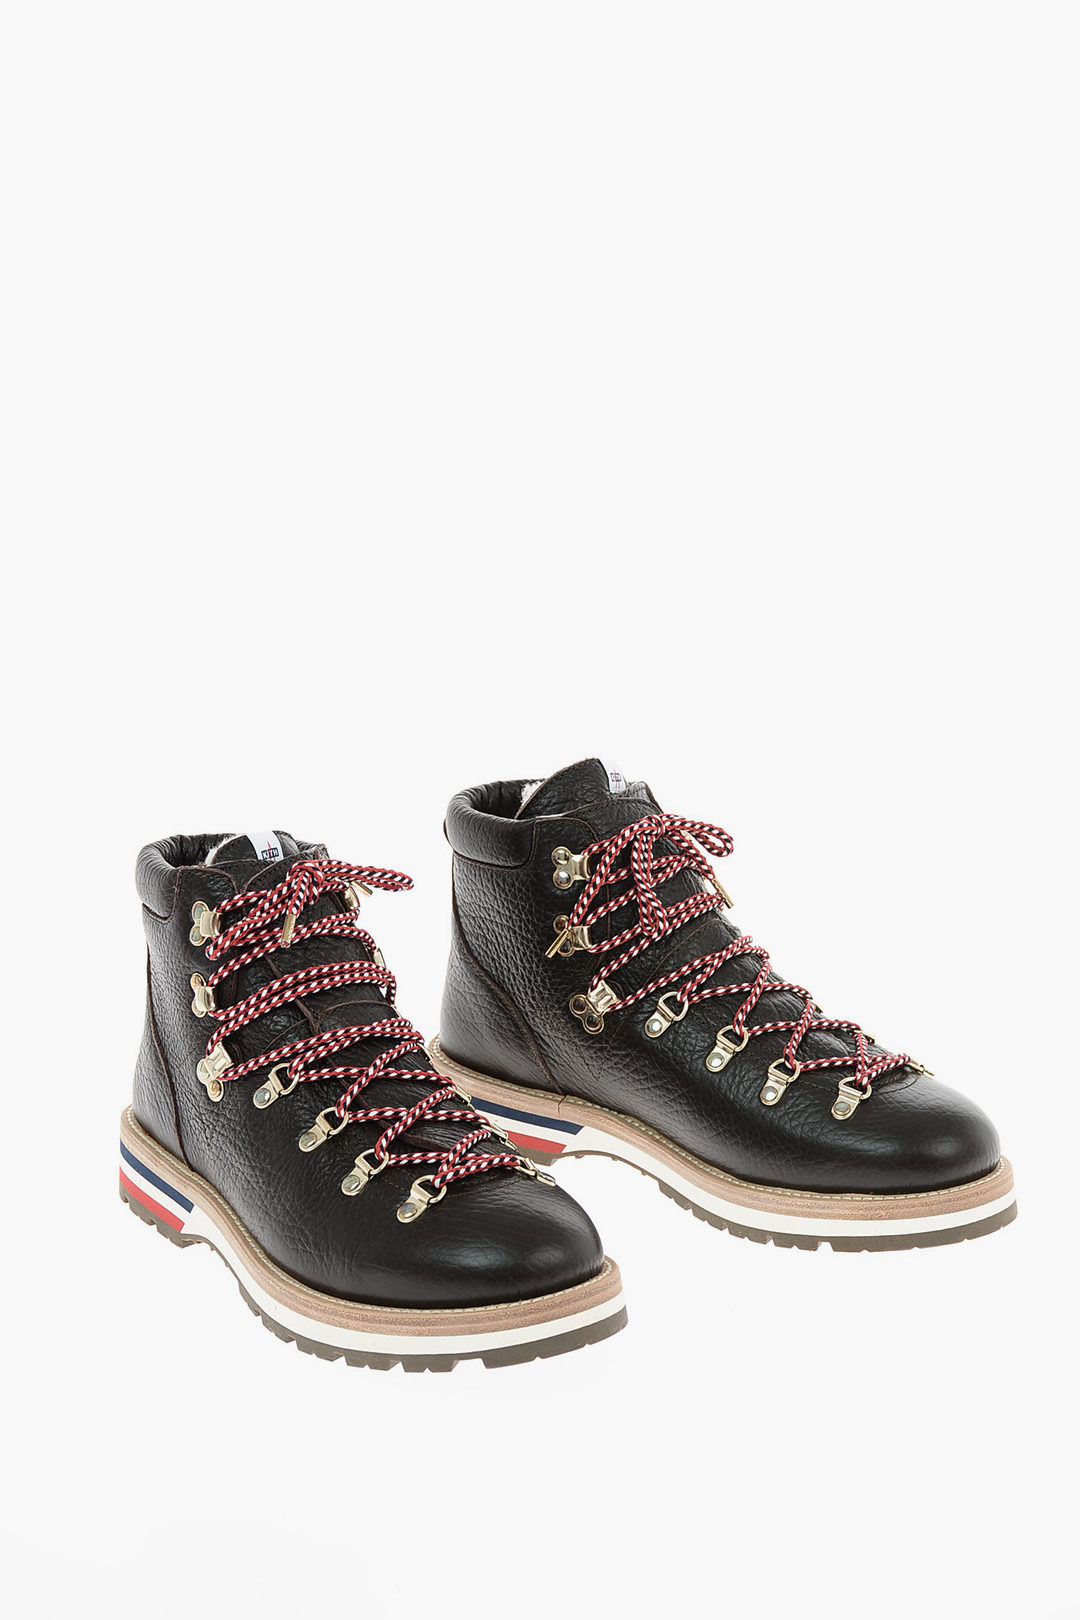 Gevoelig Onschuldig lanthaan Moncler leather Hiking boots men - Glamood Outlet